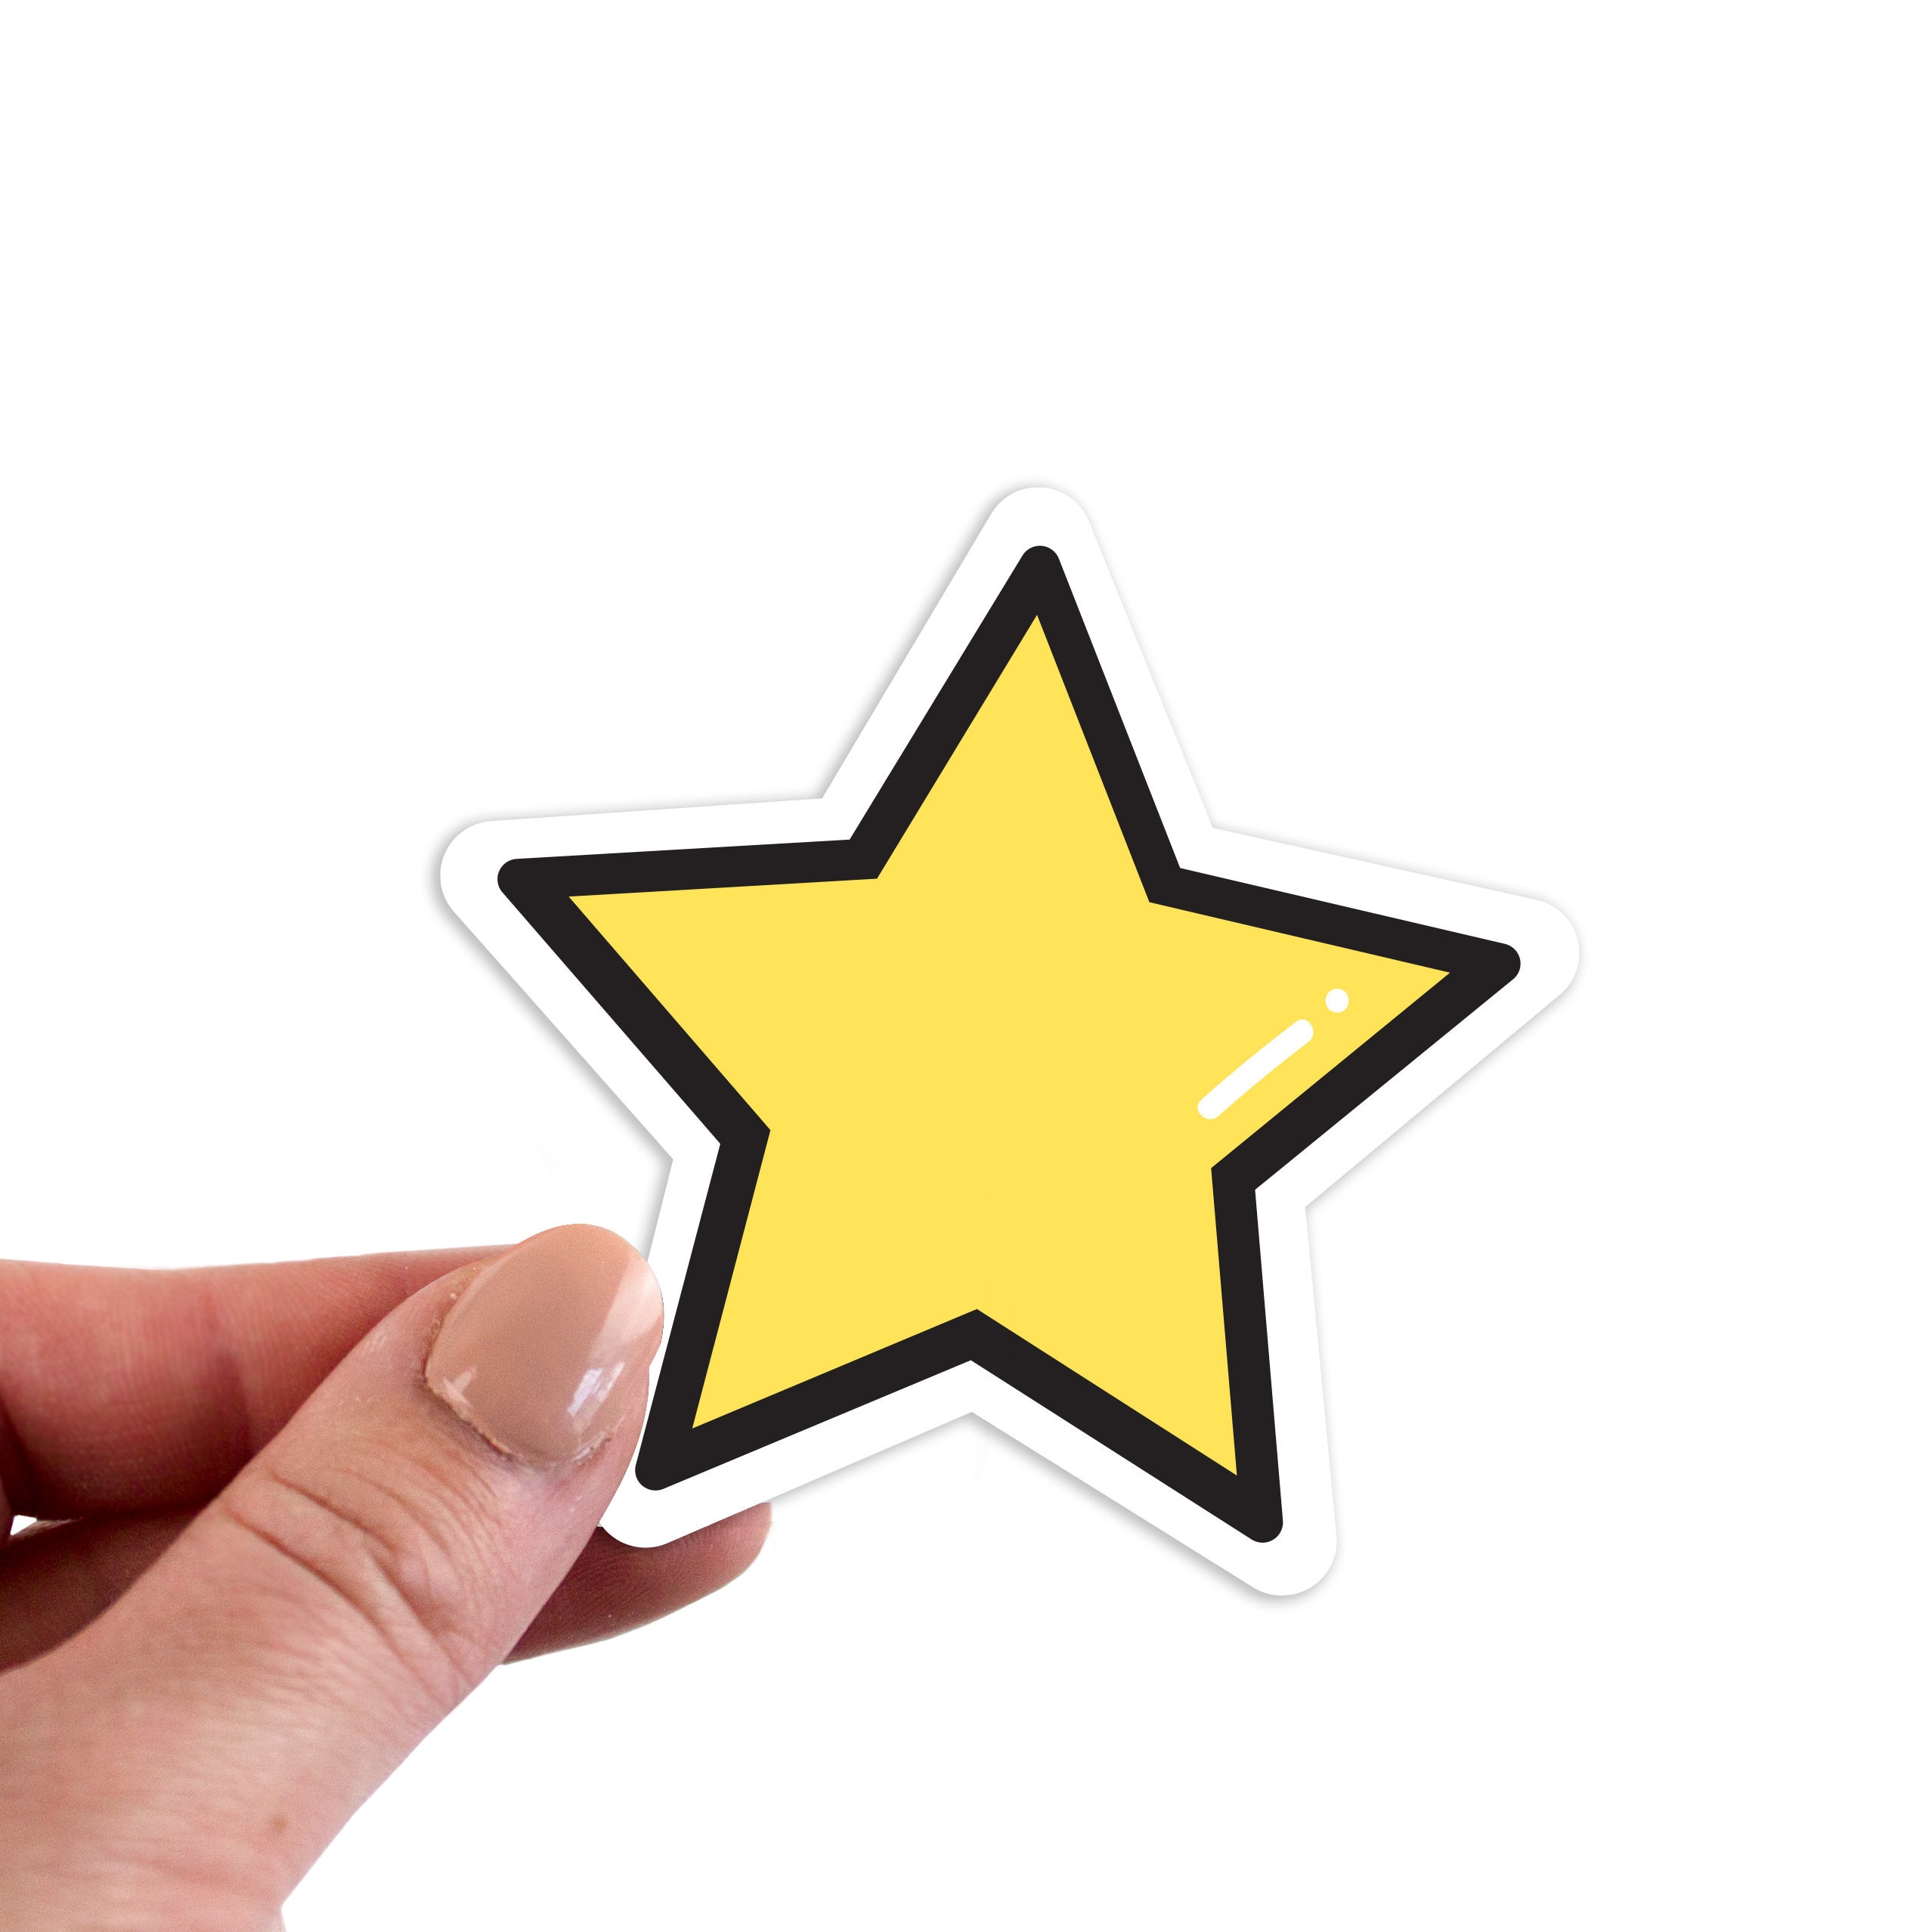 Star Stickers, Star Sticker, Star Laptop Sticker, Star Laptop Stickers,  Star Vinyl Sticker, Star Vinyl Stickers, Star Decal, Laptop Sticker